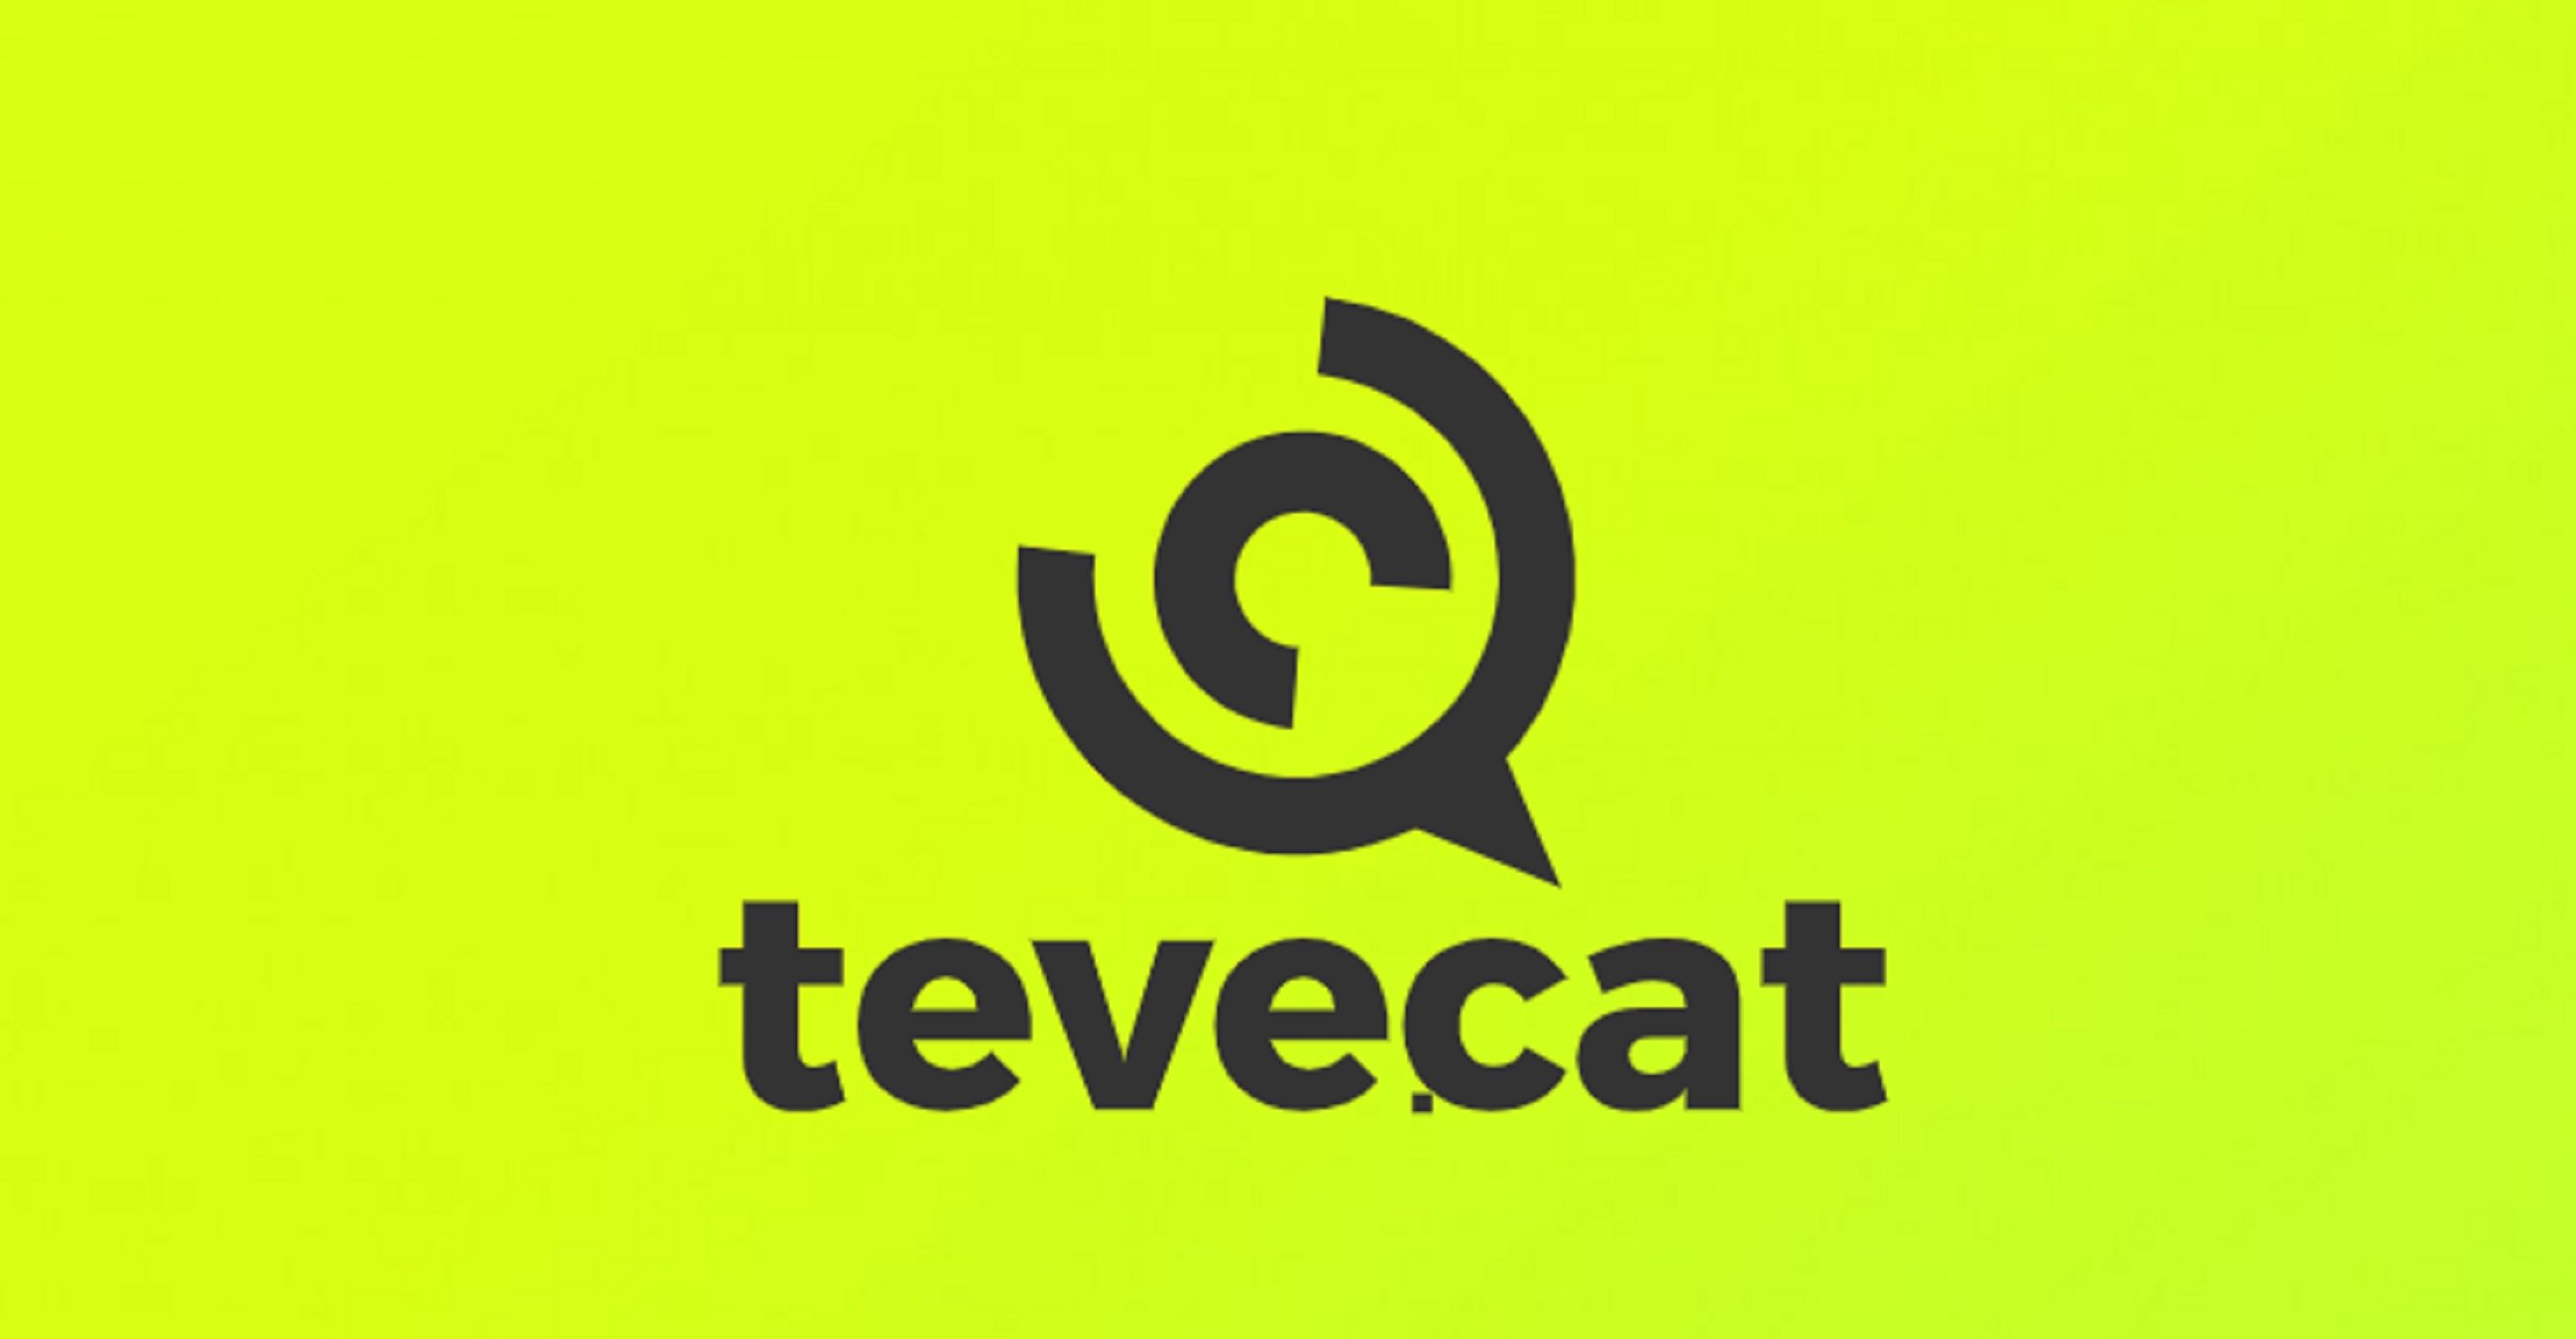 Teve.cat fitxa un ex de TV3 i de Telecinco per fer un late night